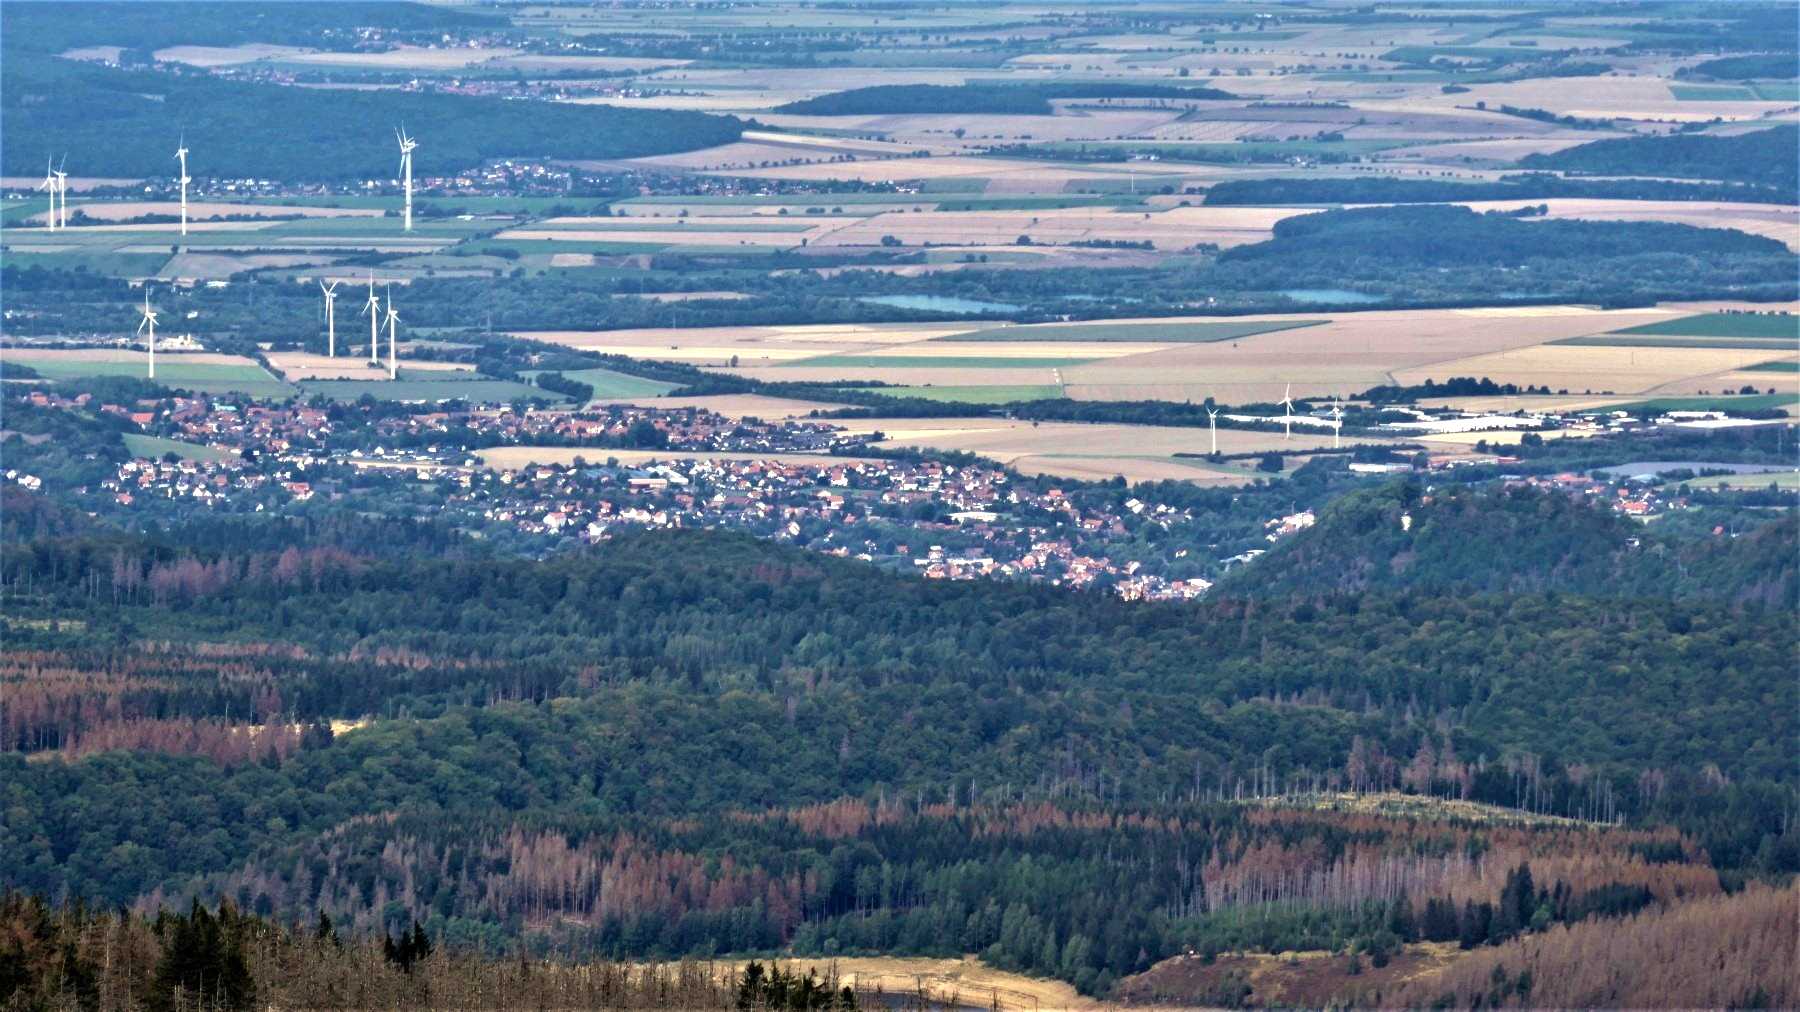 Blick auf Bad Harzburg